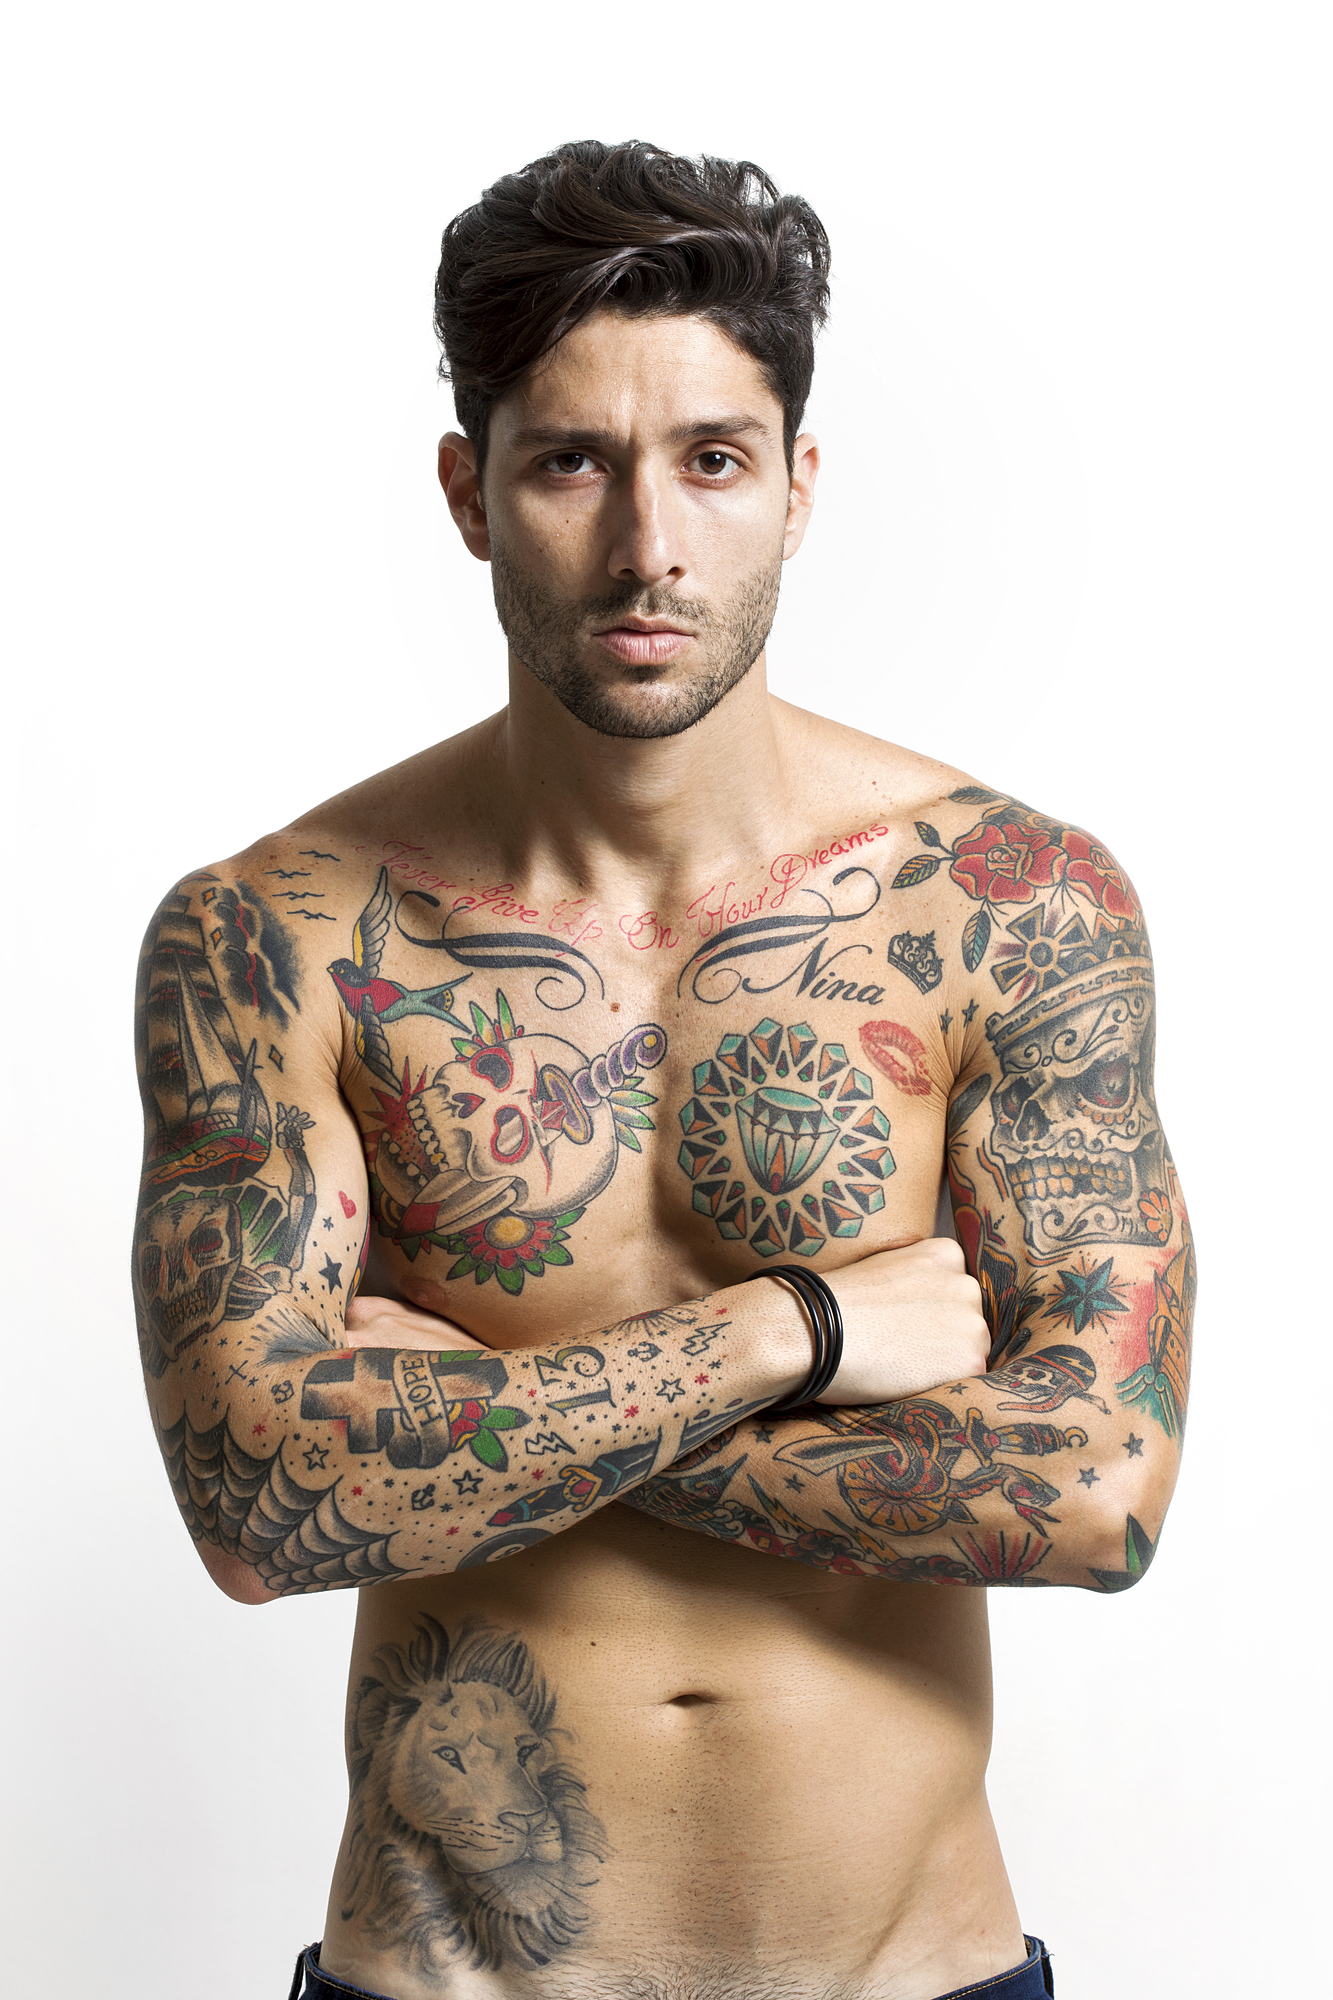 Männer mit tattoos kennenlernen